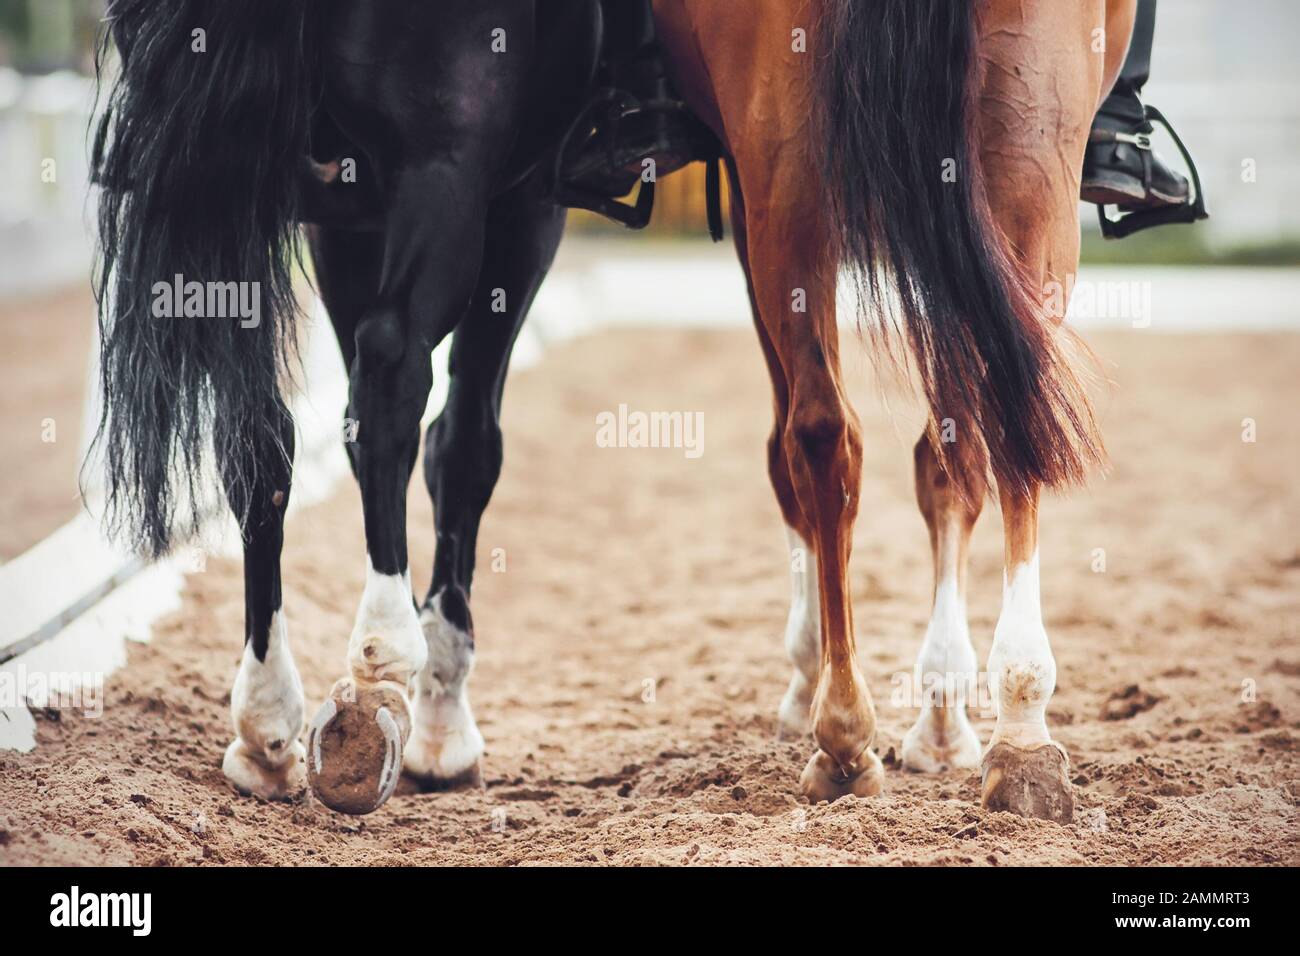 Dos caballos, uno negro y otro sorrel con colas largas y jinetes en sus entrañas, se están alejando lentamente a través de la arena. Foto de stock